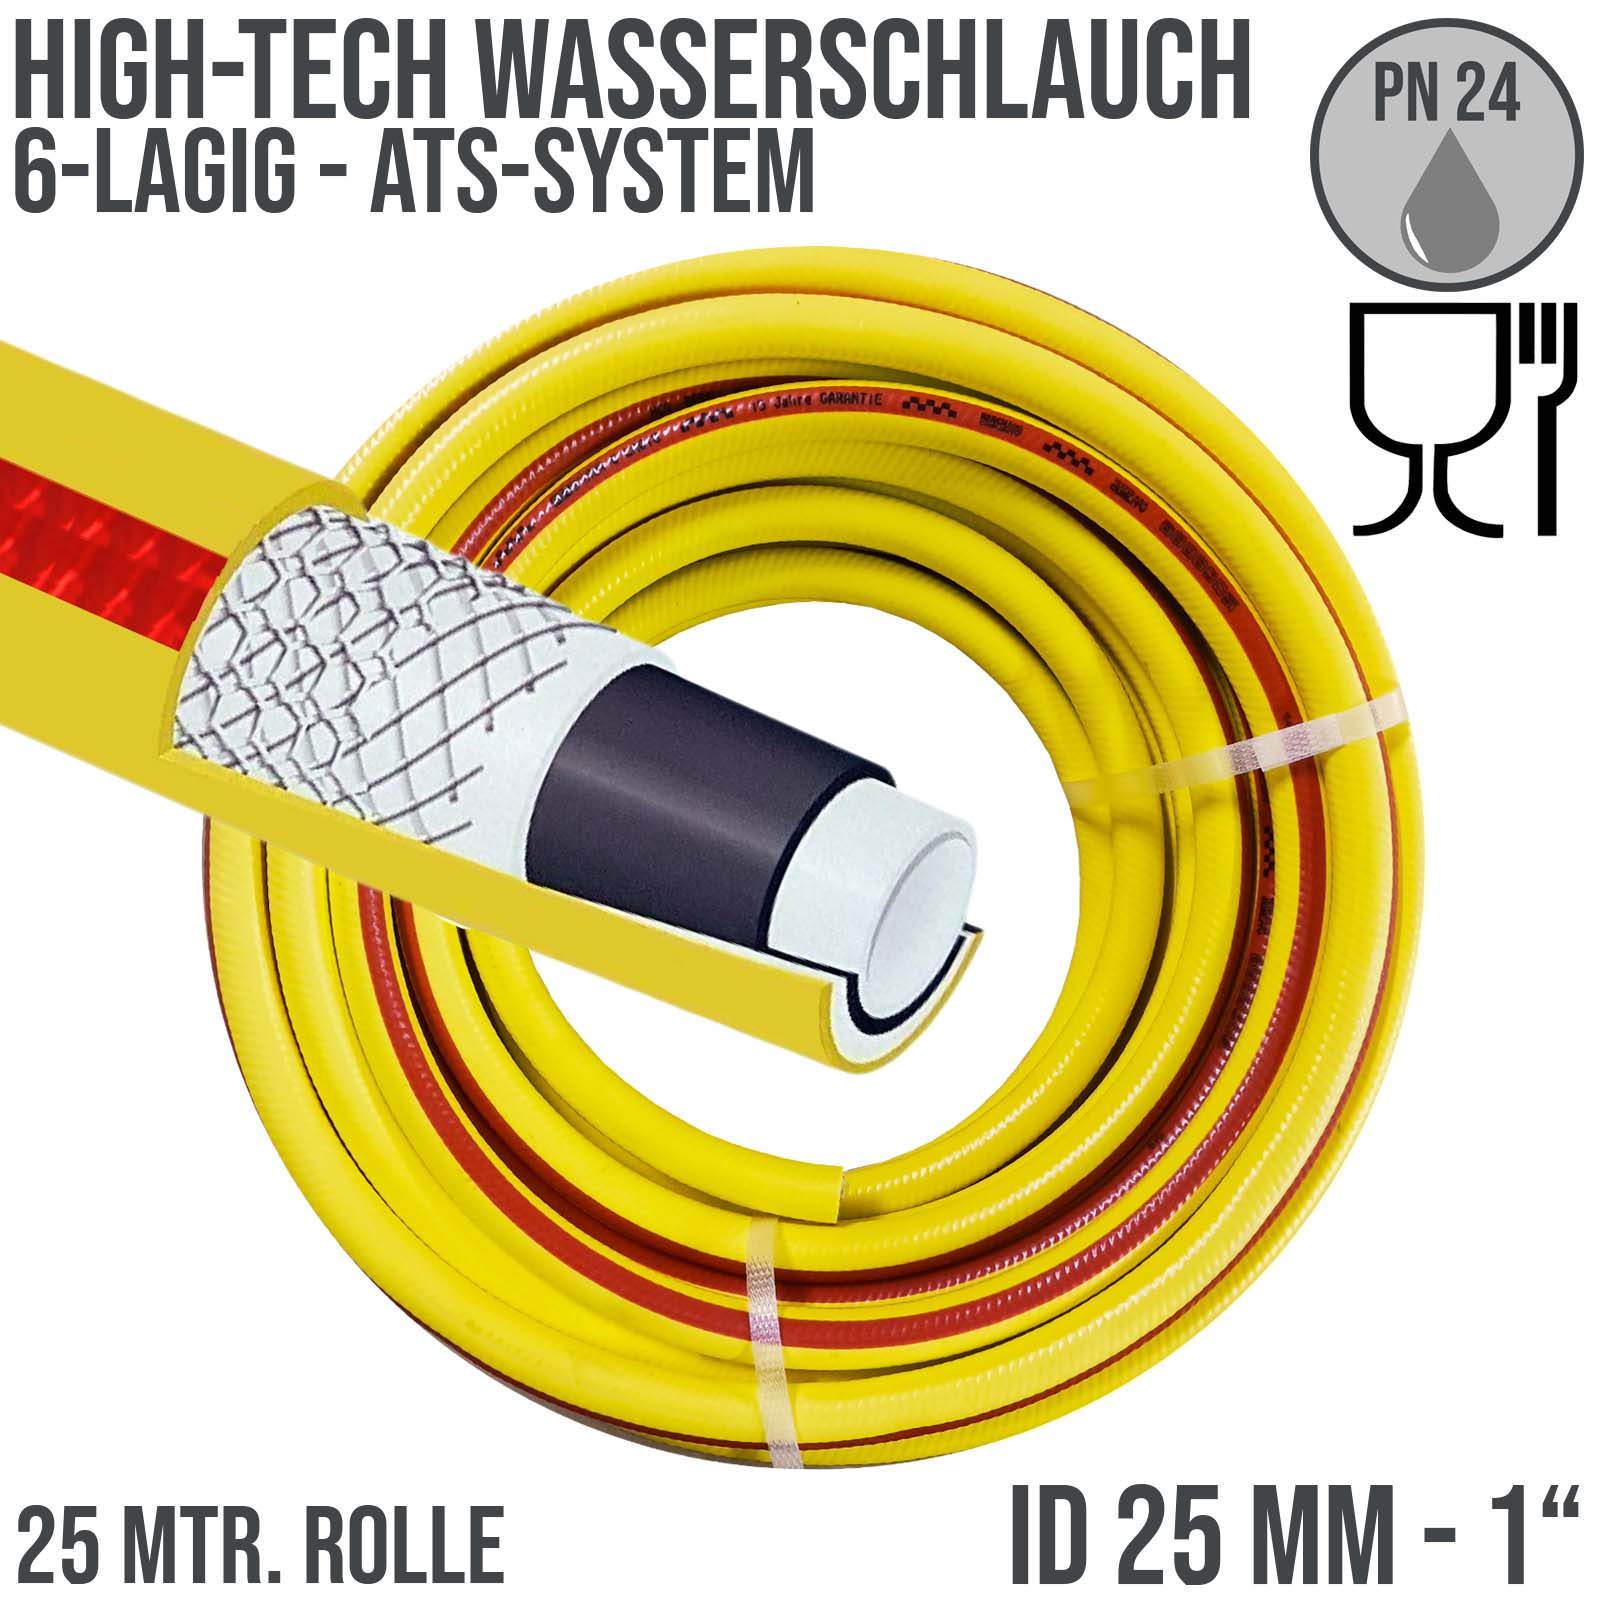 Gelber 6-lagiger HIGH TECH Wasserschlauch mit ATS (Anti-Torsion-System) und  einem Innendurchmesser von 25 mm.